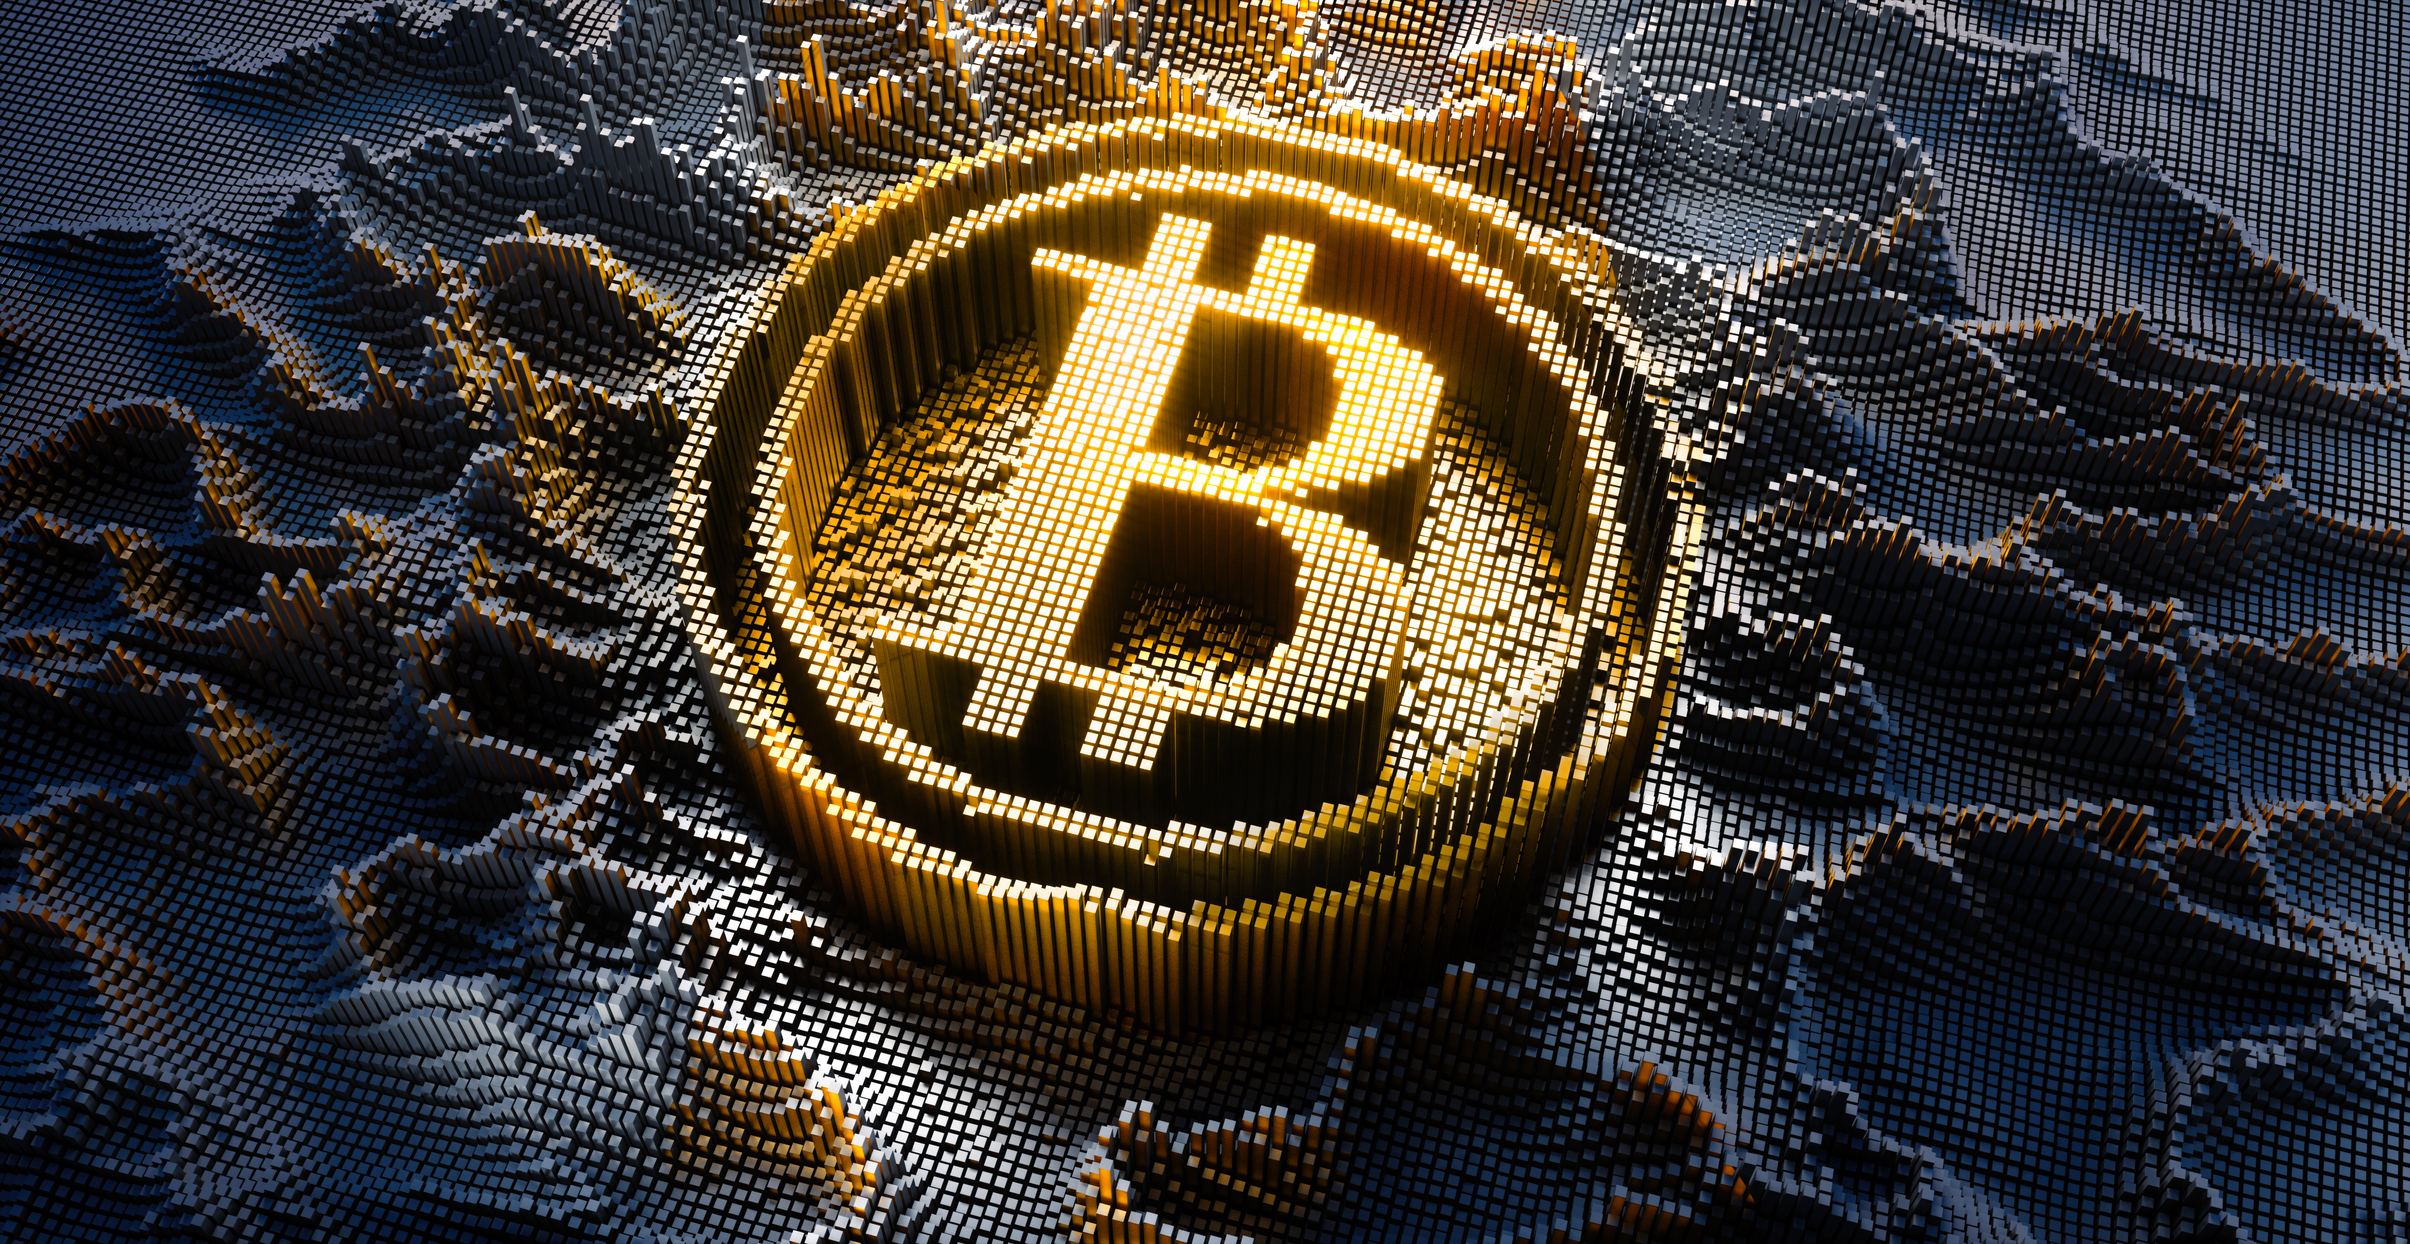 Criptos hoje: Bitcoin sustenta patamar de US$ 20 mil em meio à explosão de posições alavancadas para US$ 9 bi